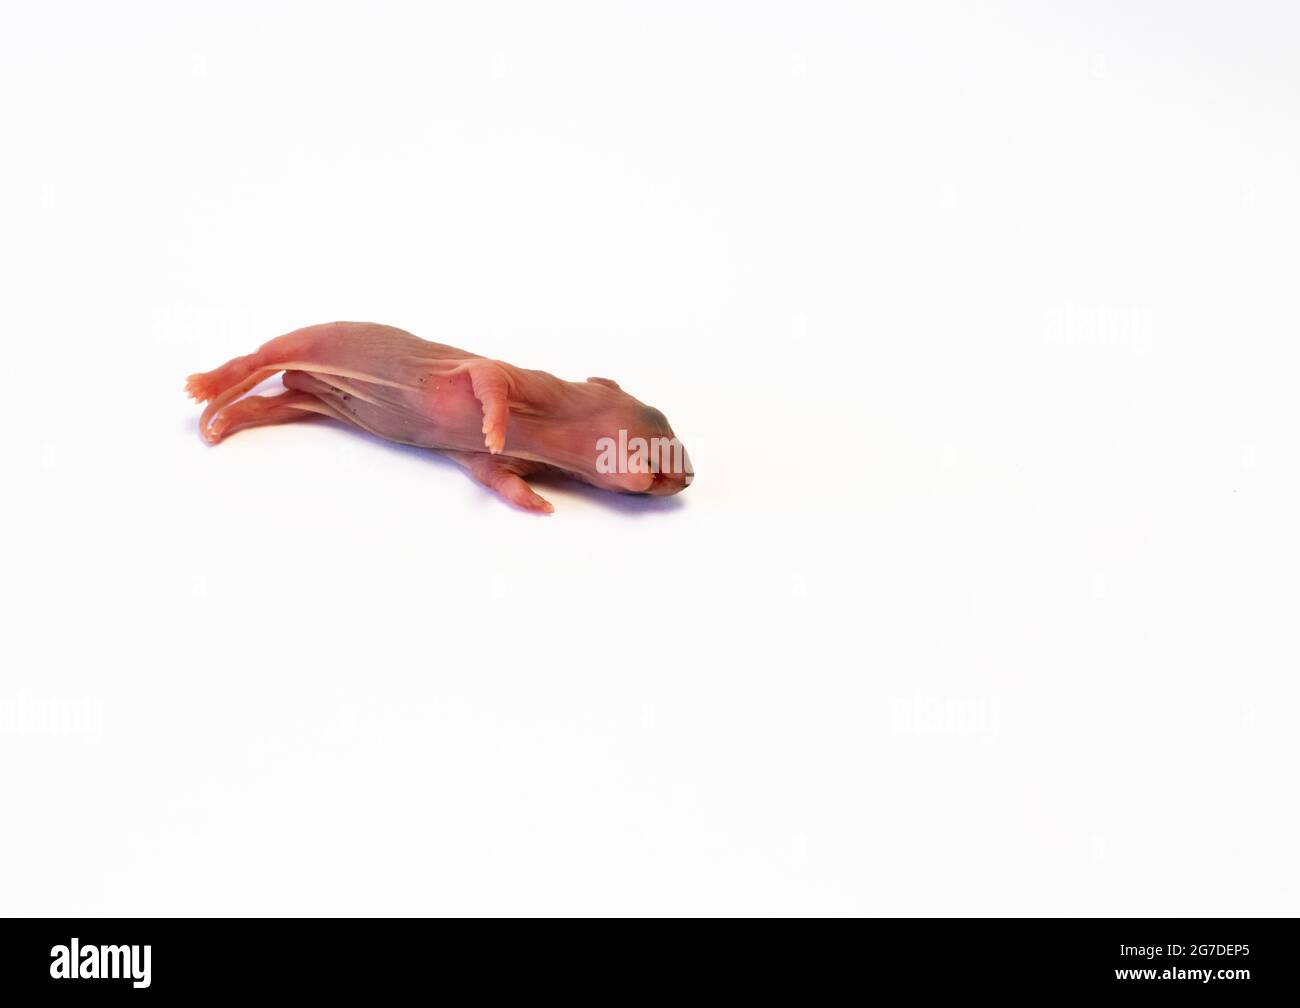 Neugeborene Ratte, rosafarbener Körper, noch keine Haare und Augen noch nicht offen. Tot auf weißem Hintergrund liegend. Speicherplatz kopieren. Stockfoto